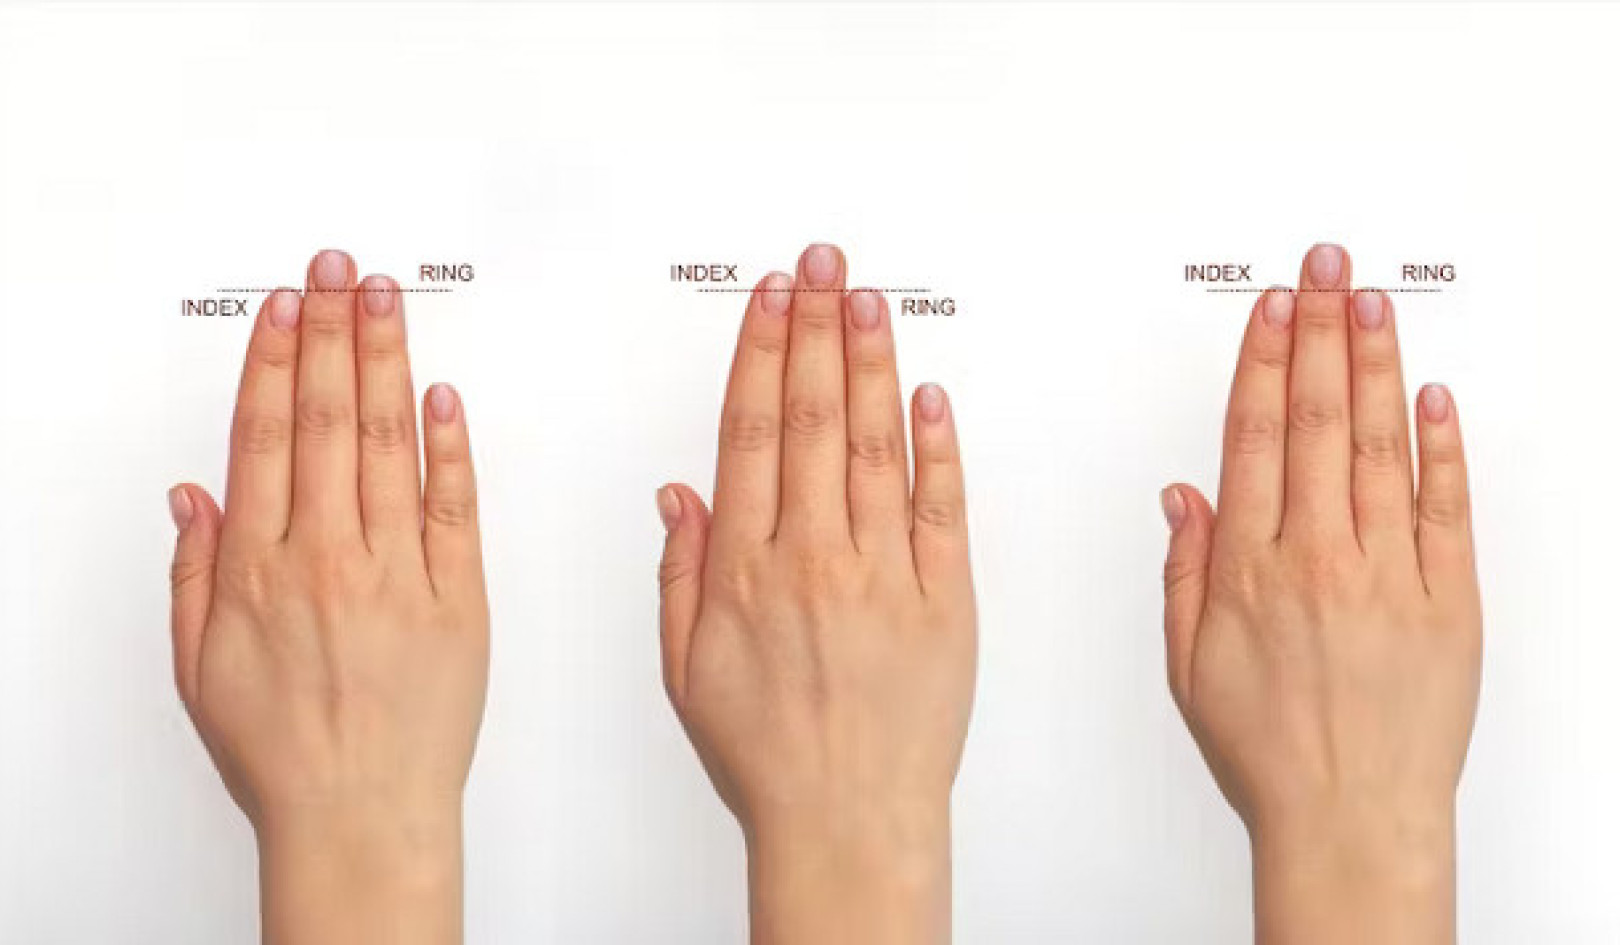 فتح الأسرار الصحية من خلال يديك: من تغييرات الأظافر إلى طول الإصبع